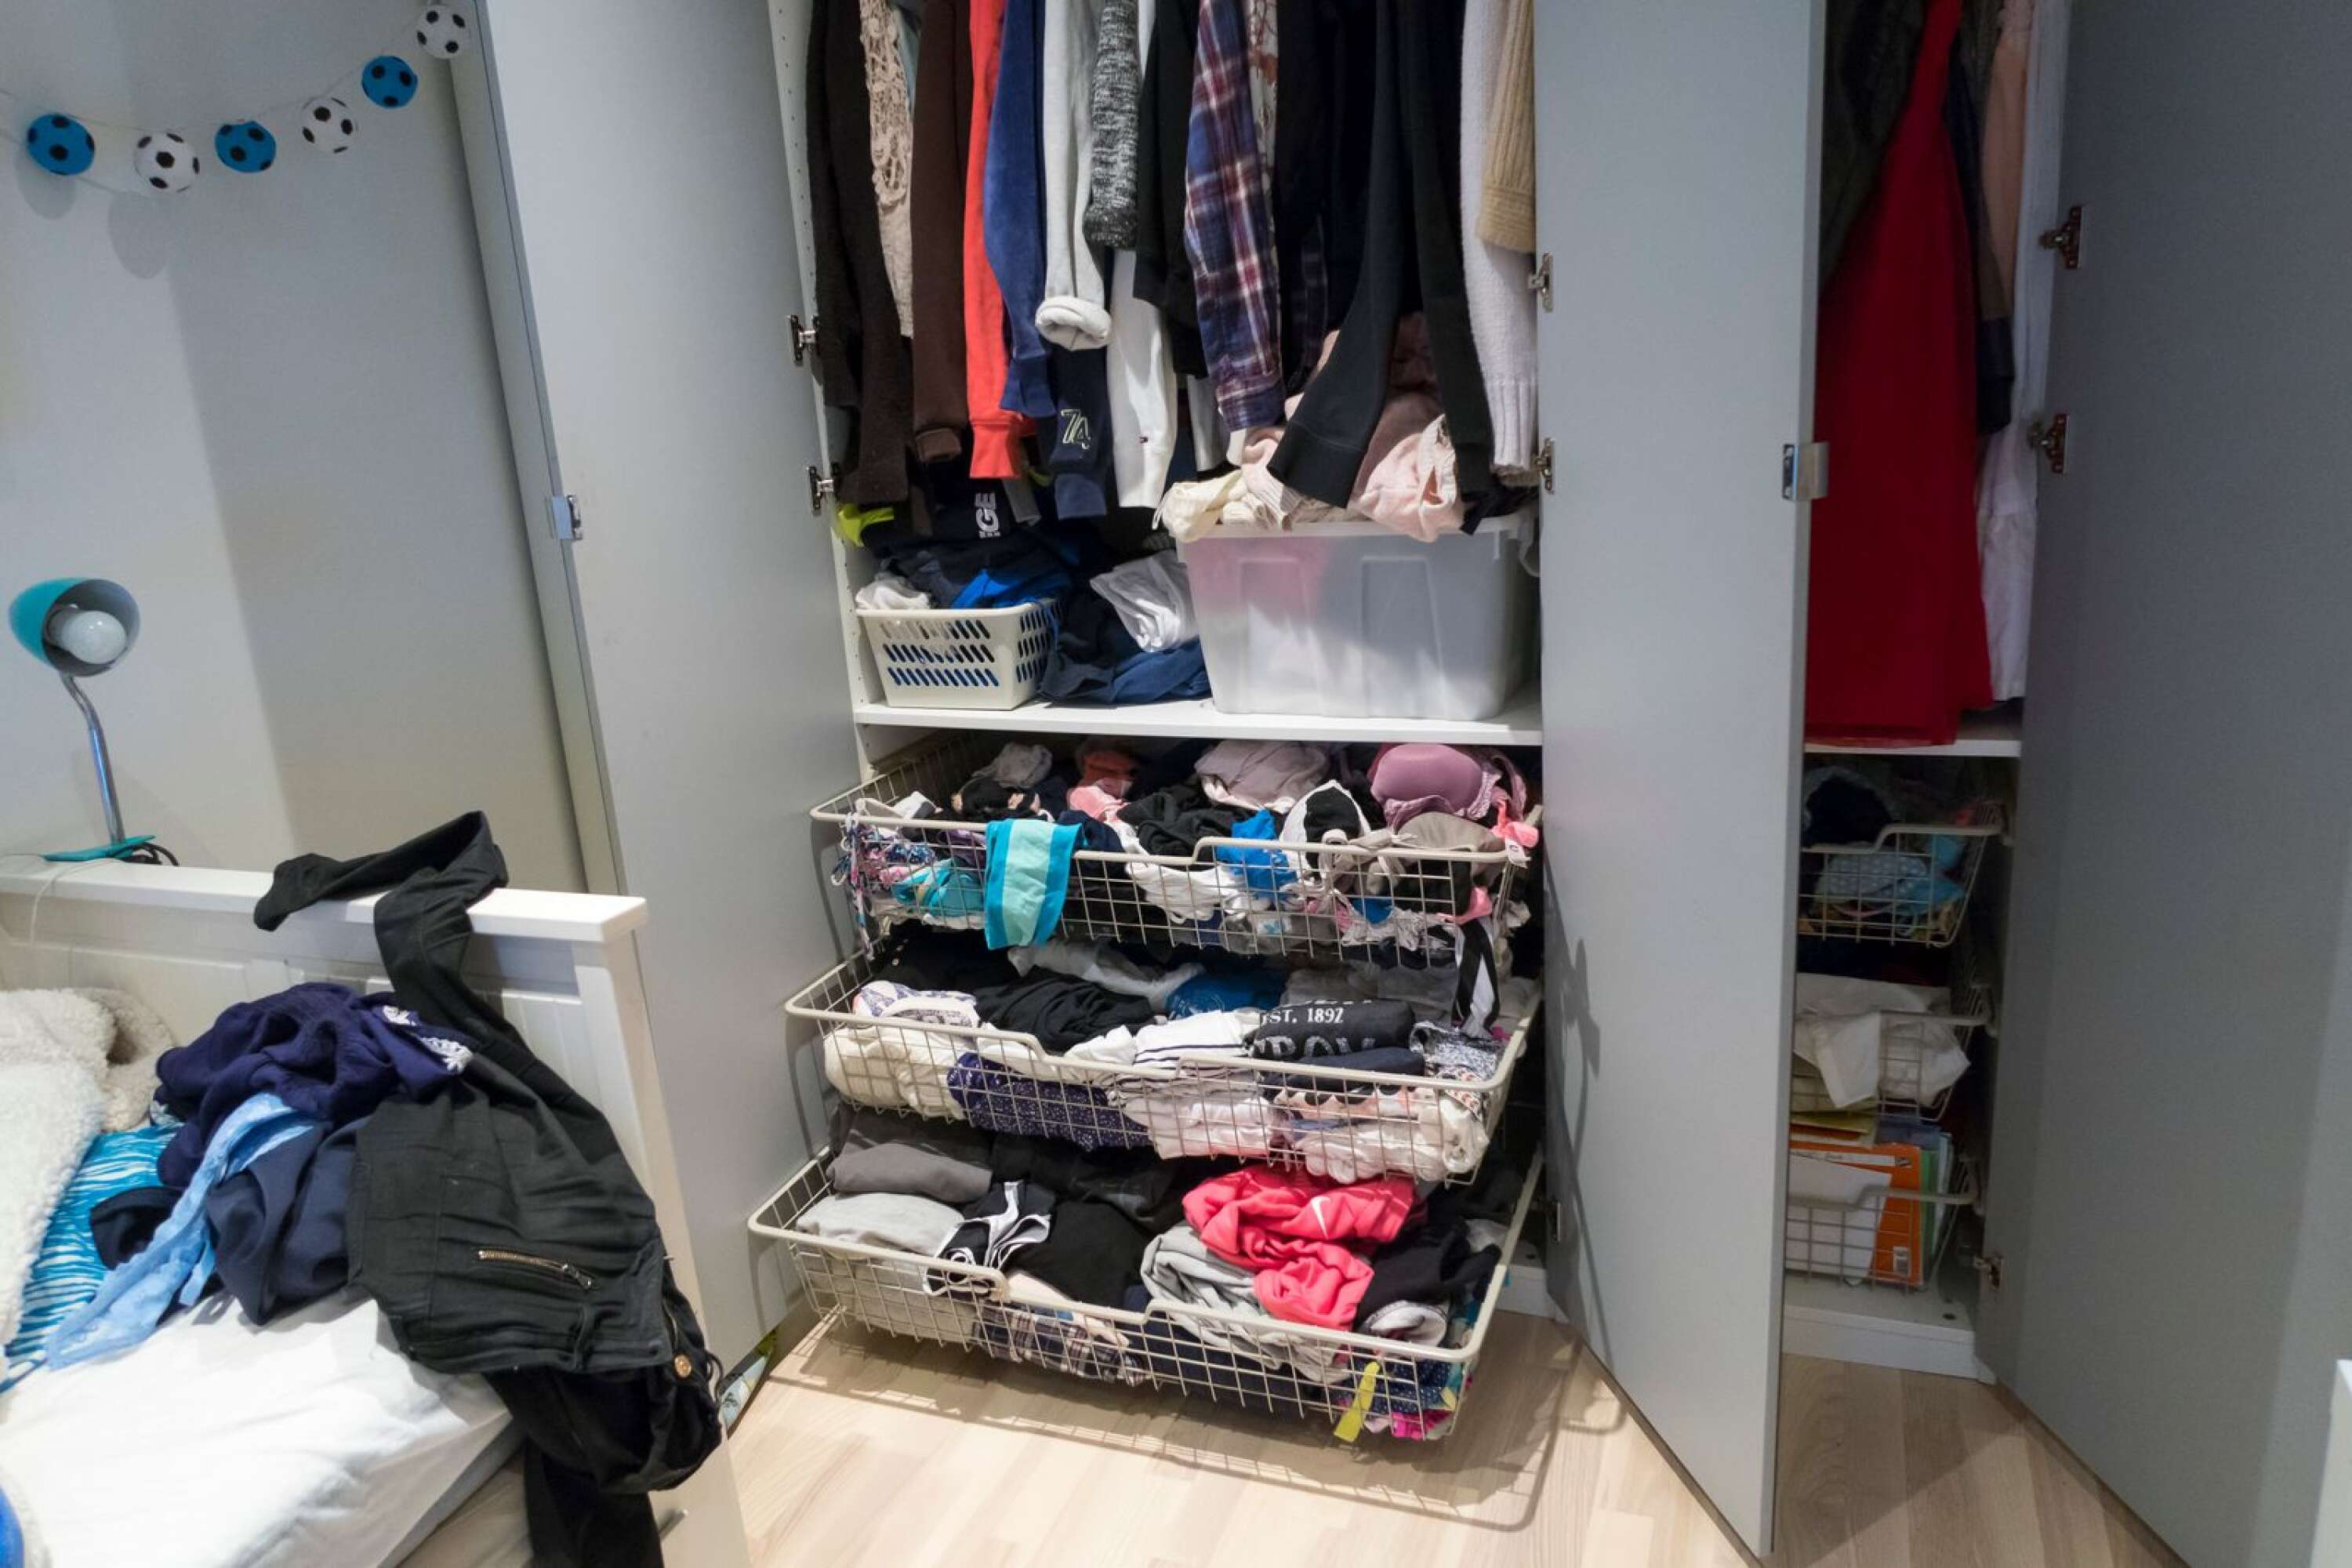 Många har svårt att hitta kläder trots att garderoben är överfull.